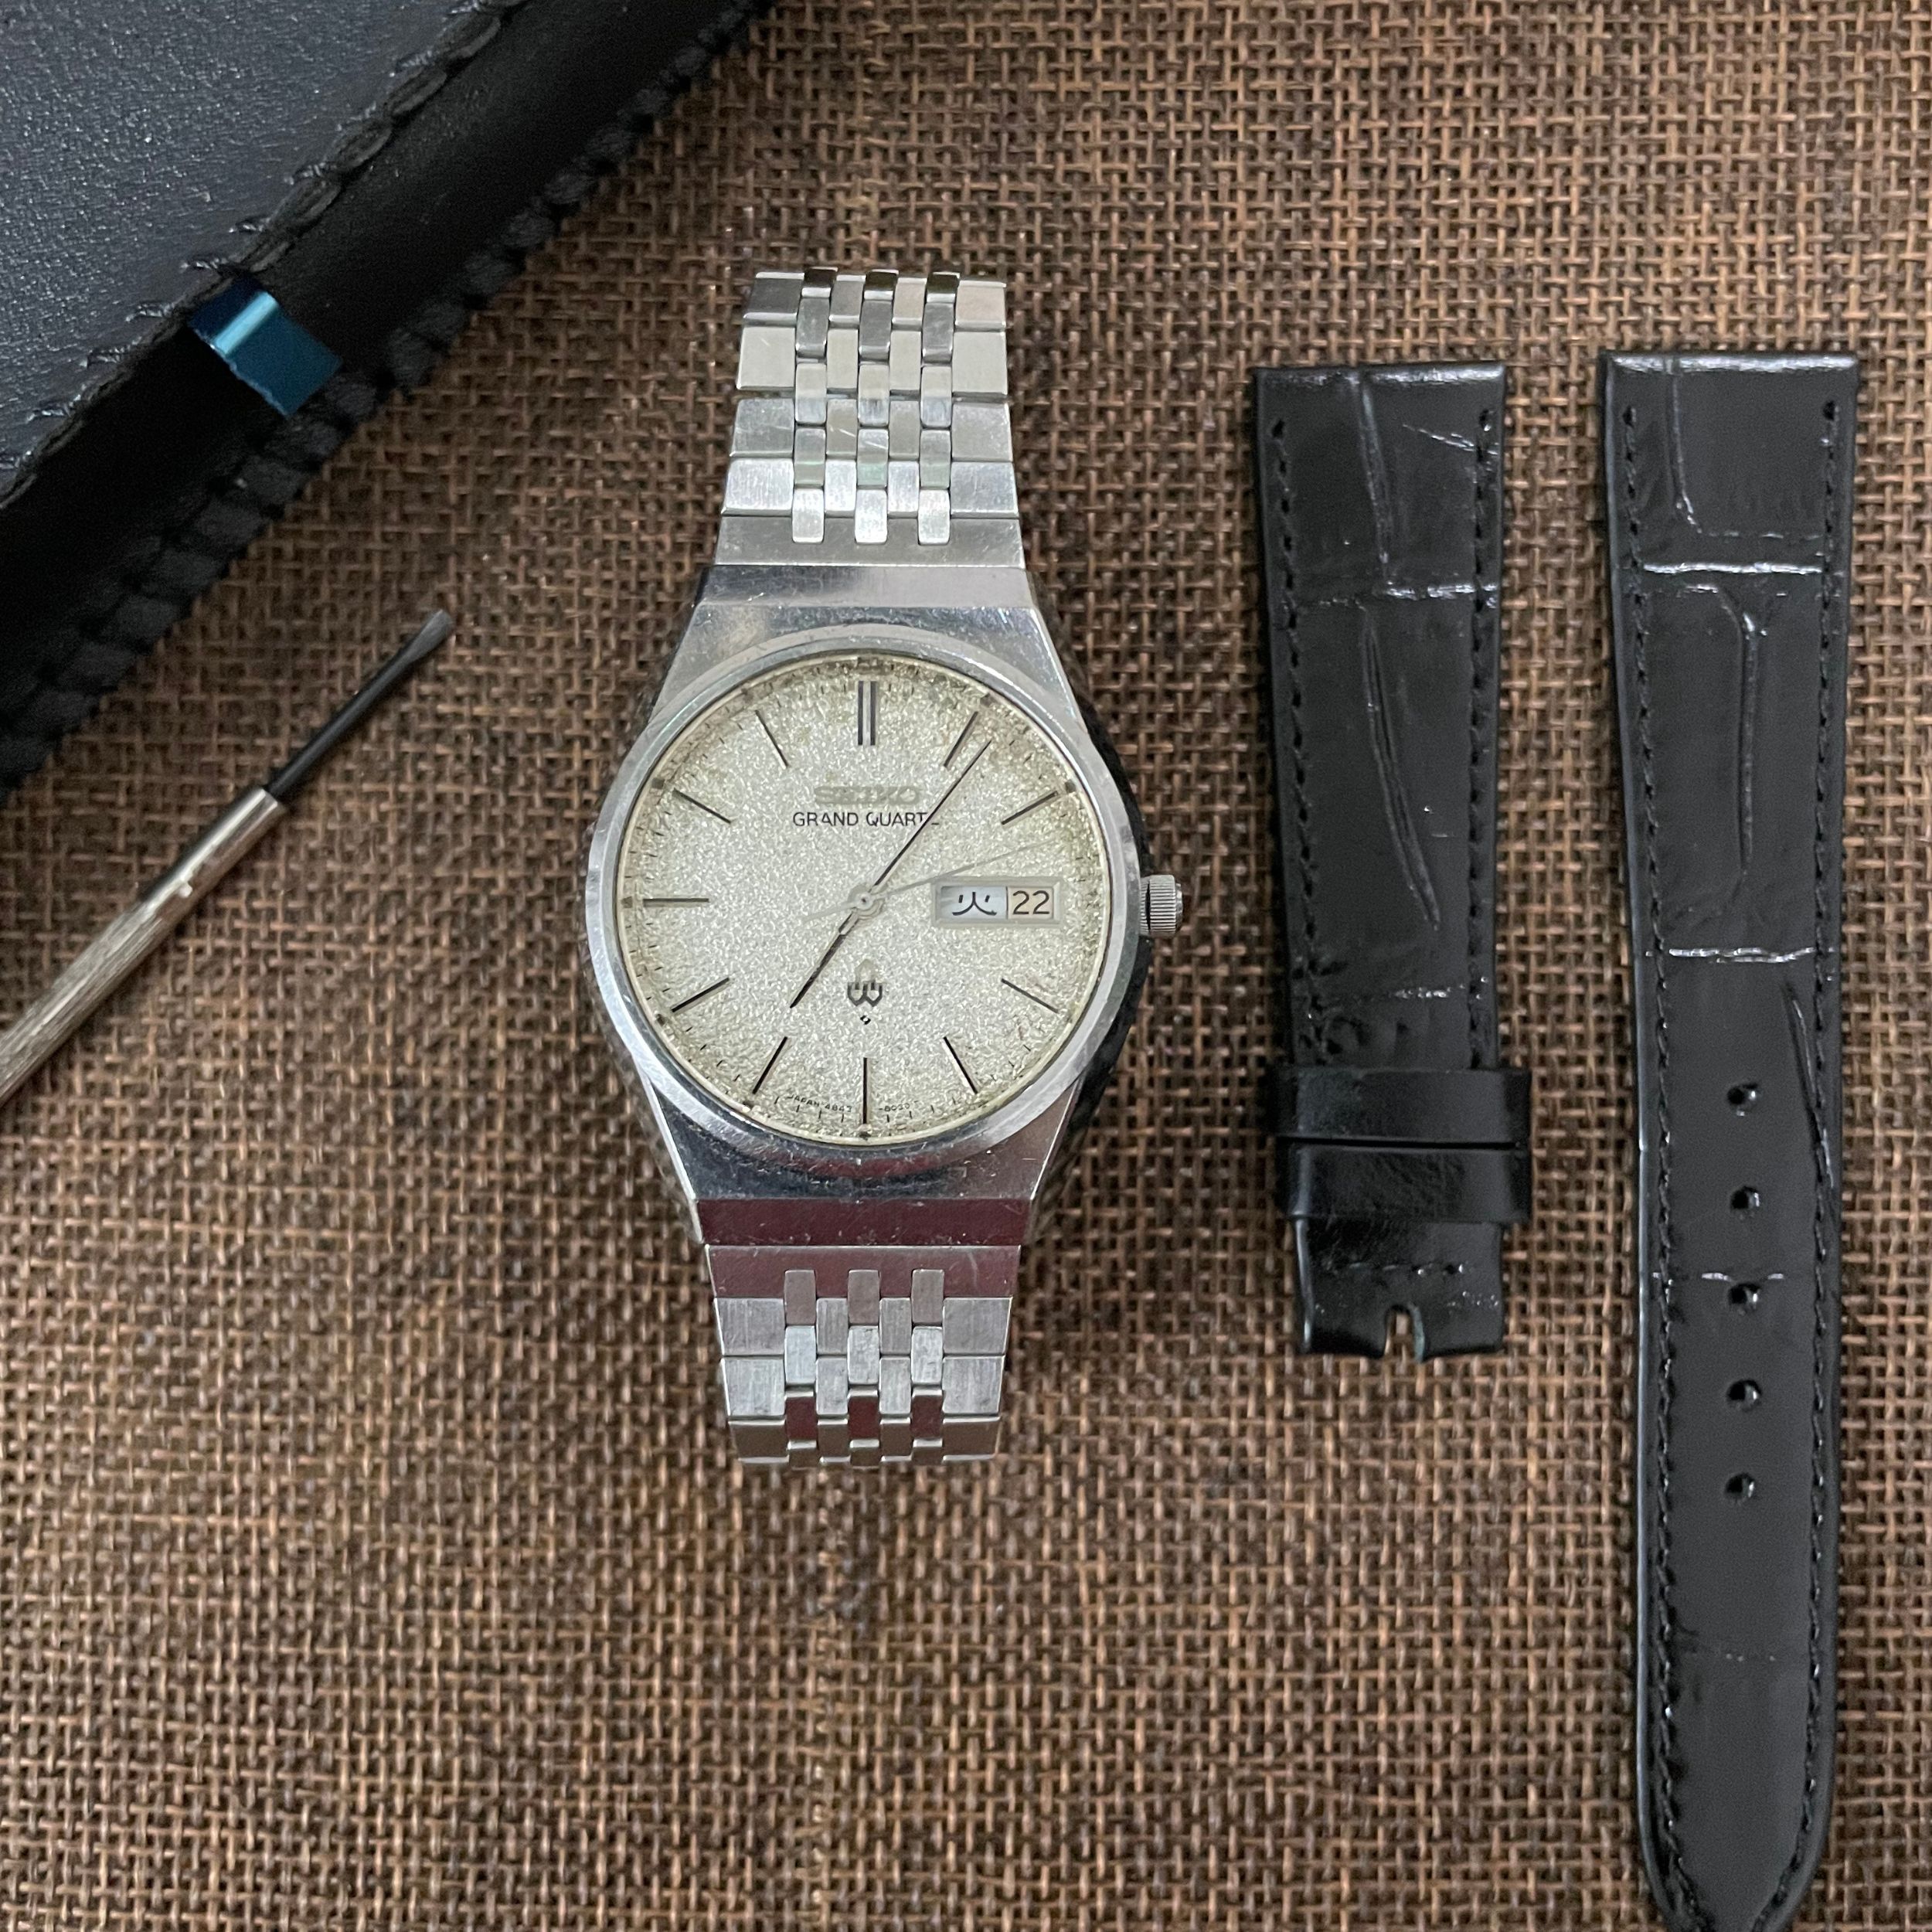 Đồng hồ Seiko Grand Quartz 4843-8100 Diamond Dust chính hãng (2hand) - Đồng  hồ Vintage - Shop đồng hồ cũ, địa chỉ chuyên cung cấp các loại đồng hồ cổ,  đồng hồ